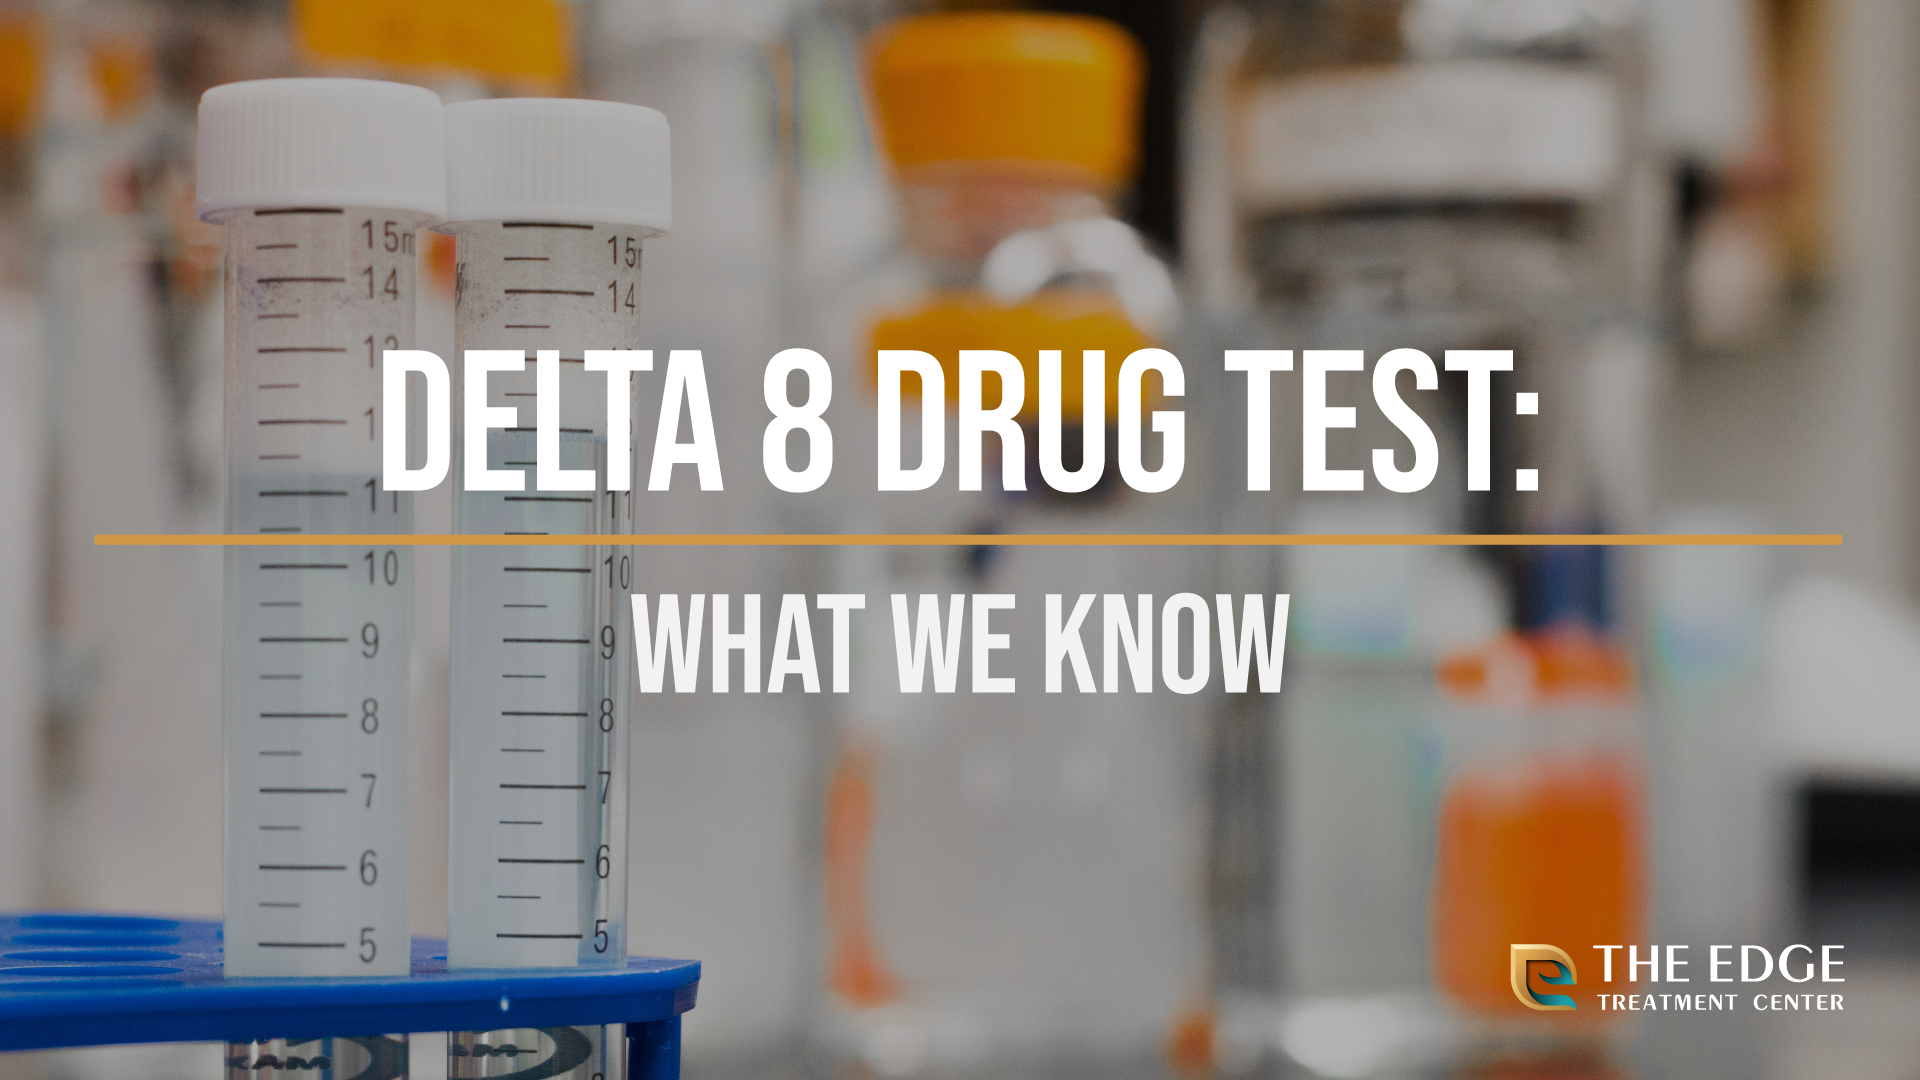 Delta 8 Drug Test: Should You Be Worried About Delta 8 & Drug Testing?